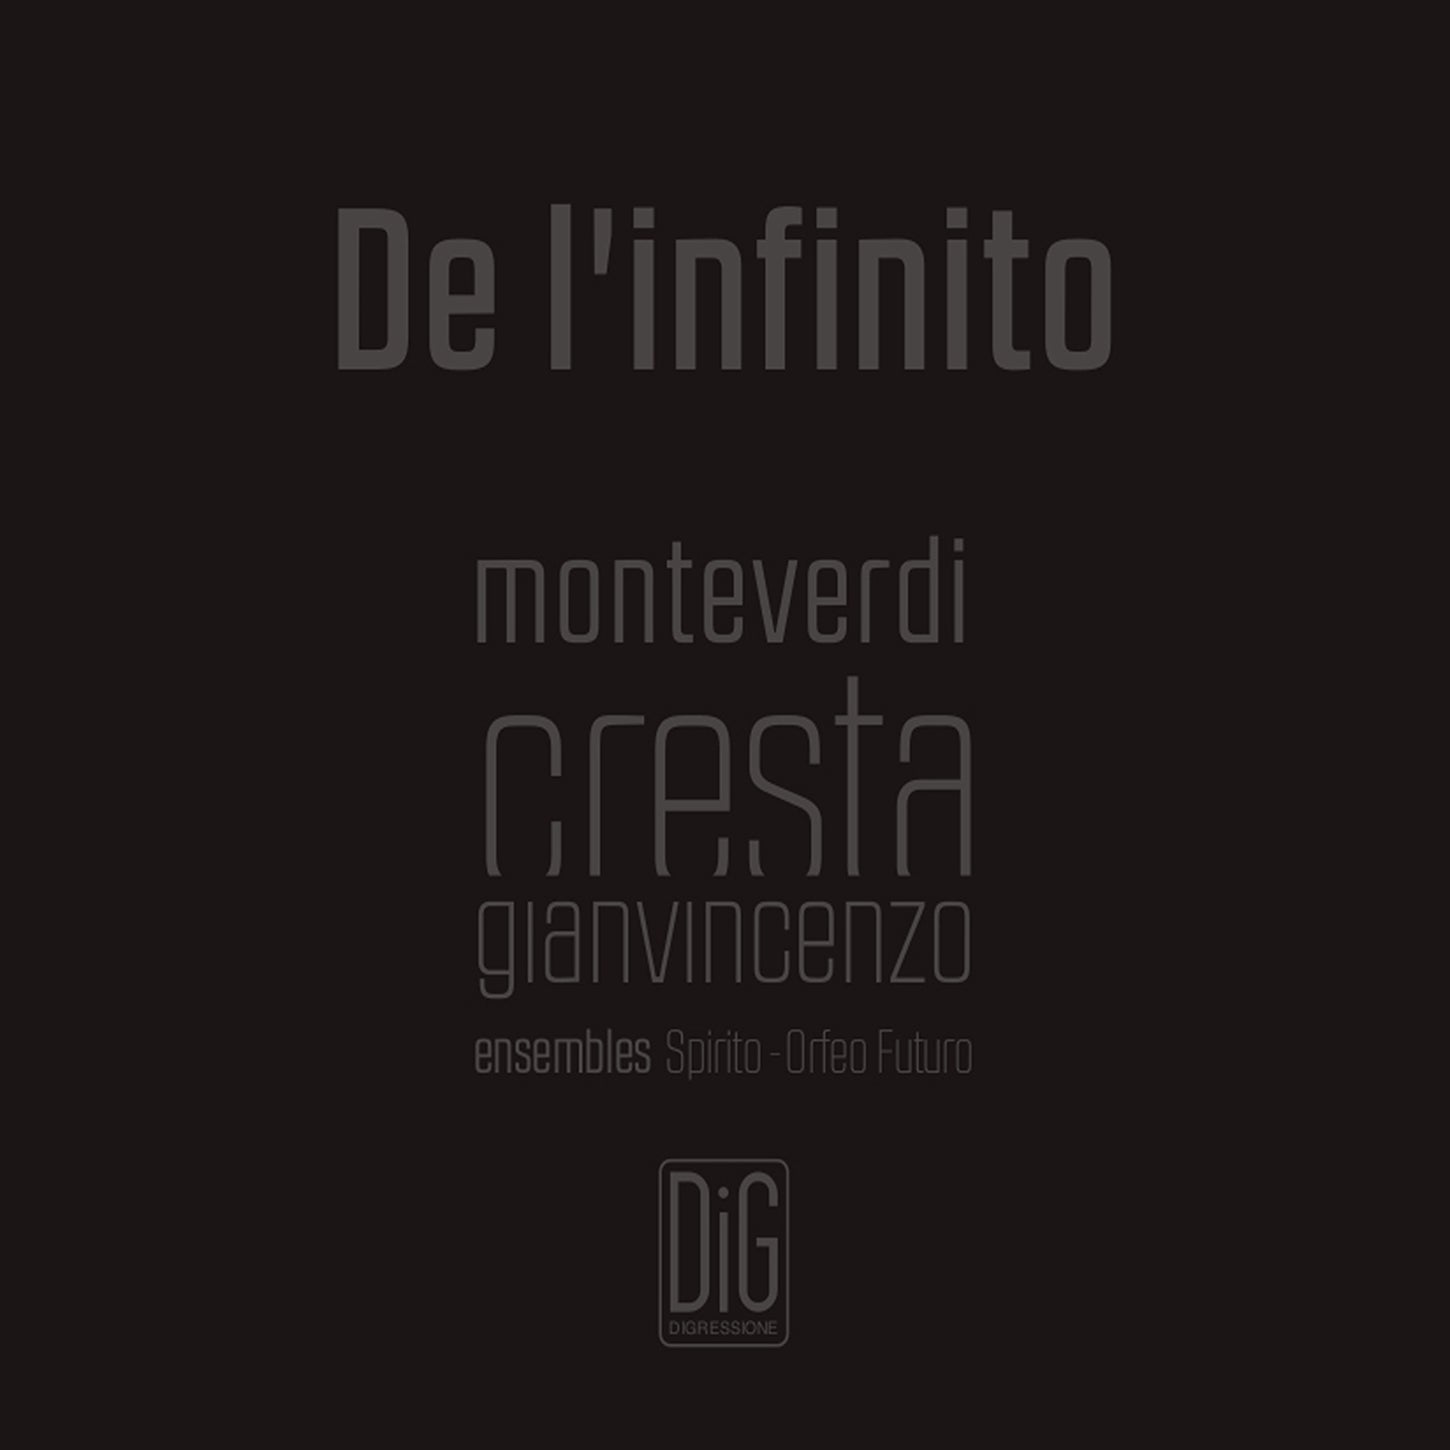 Monteverdi & Cresta: De l'infinito / Abbrecia, Ensemble Spirito, Orfeo Futuro